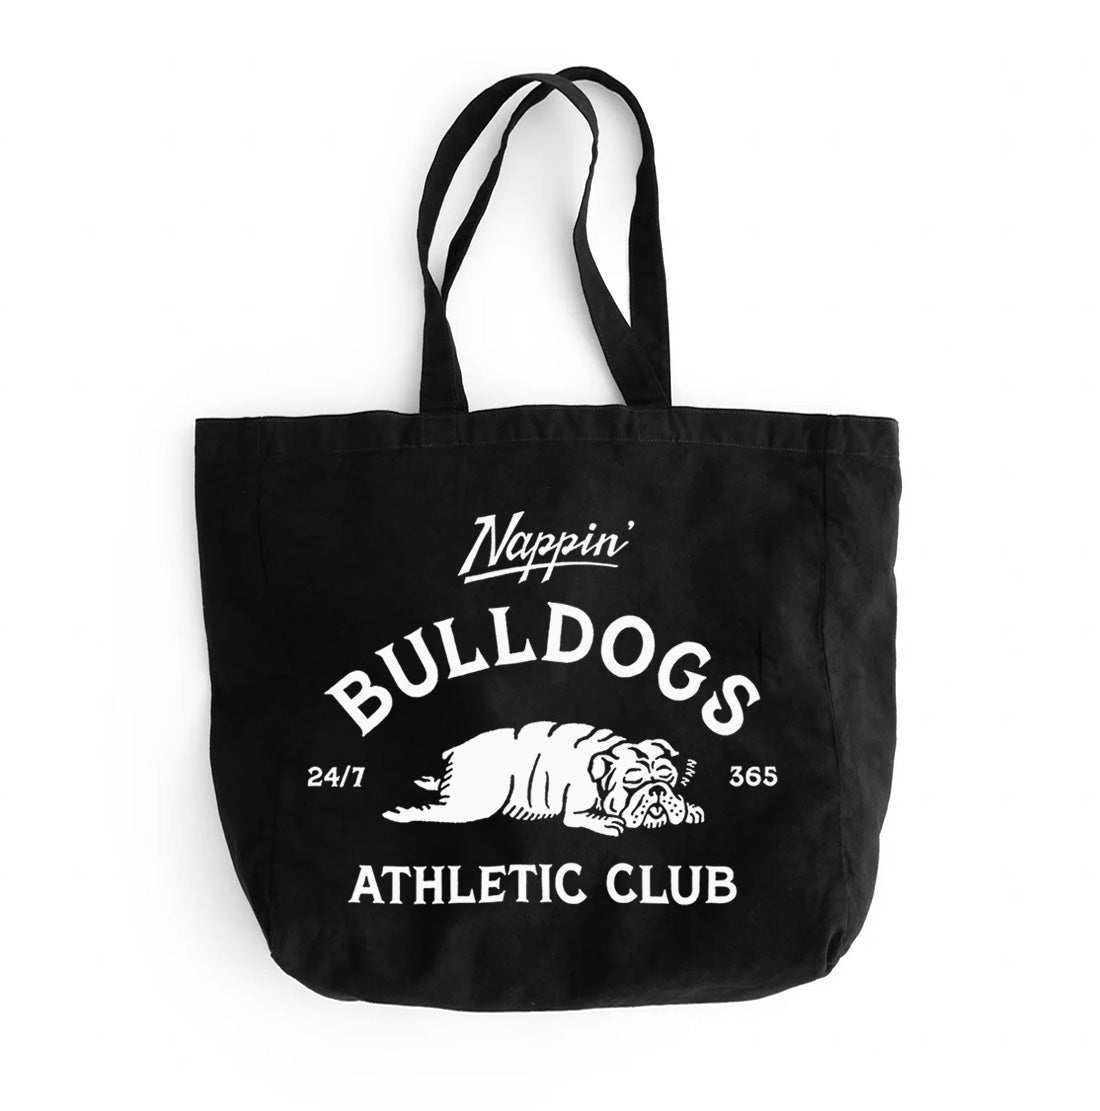 The Big Bag Club  Big bags, Bags, Big bags fashion